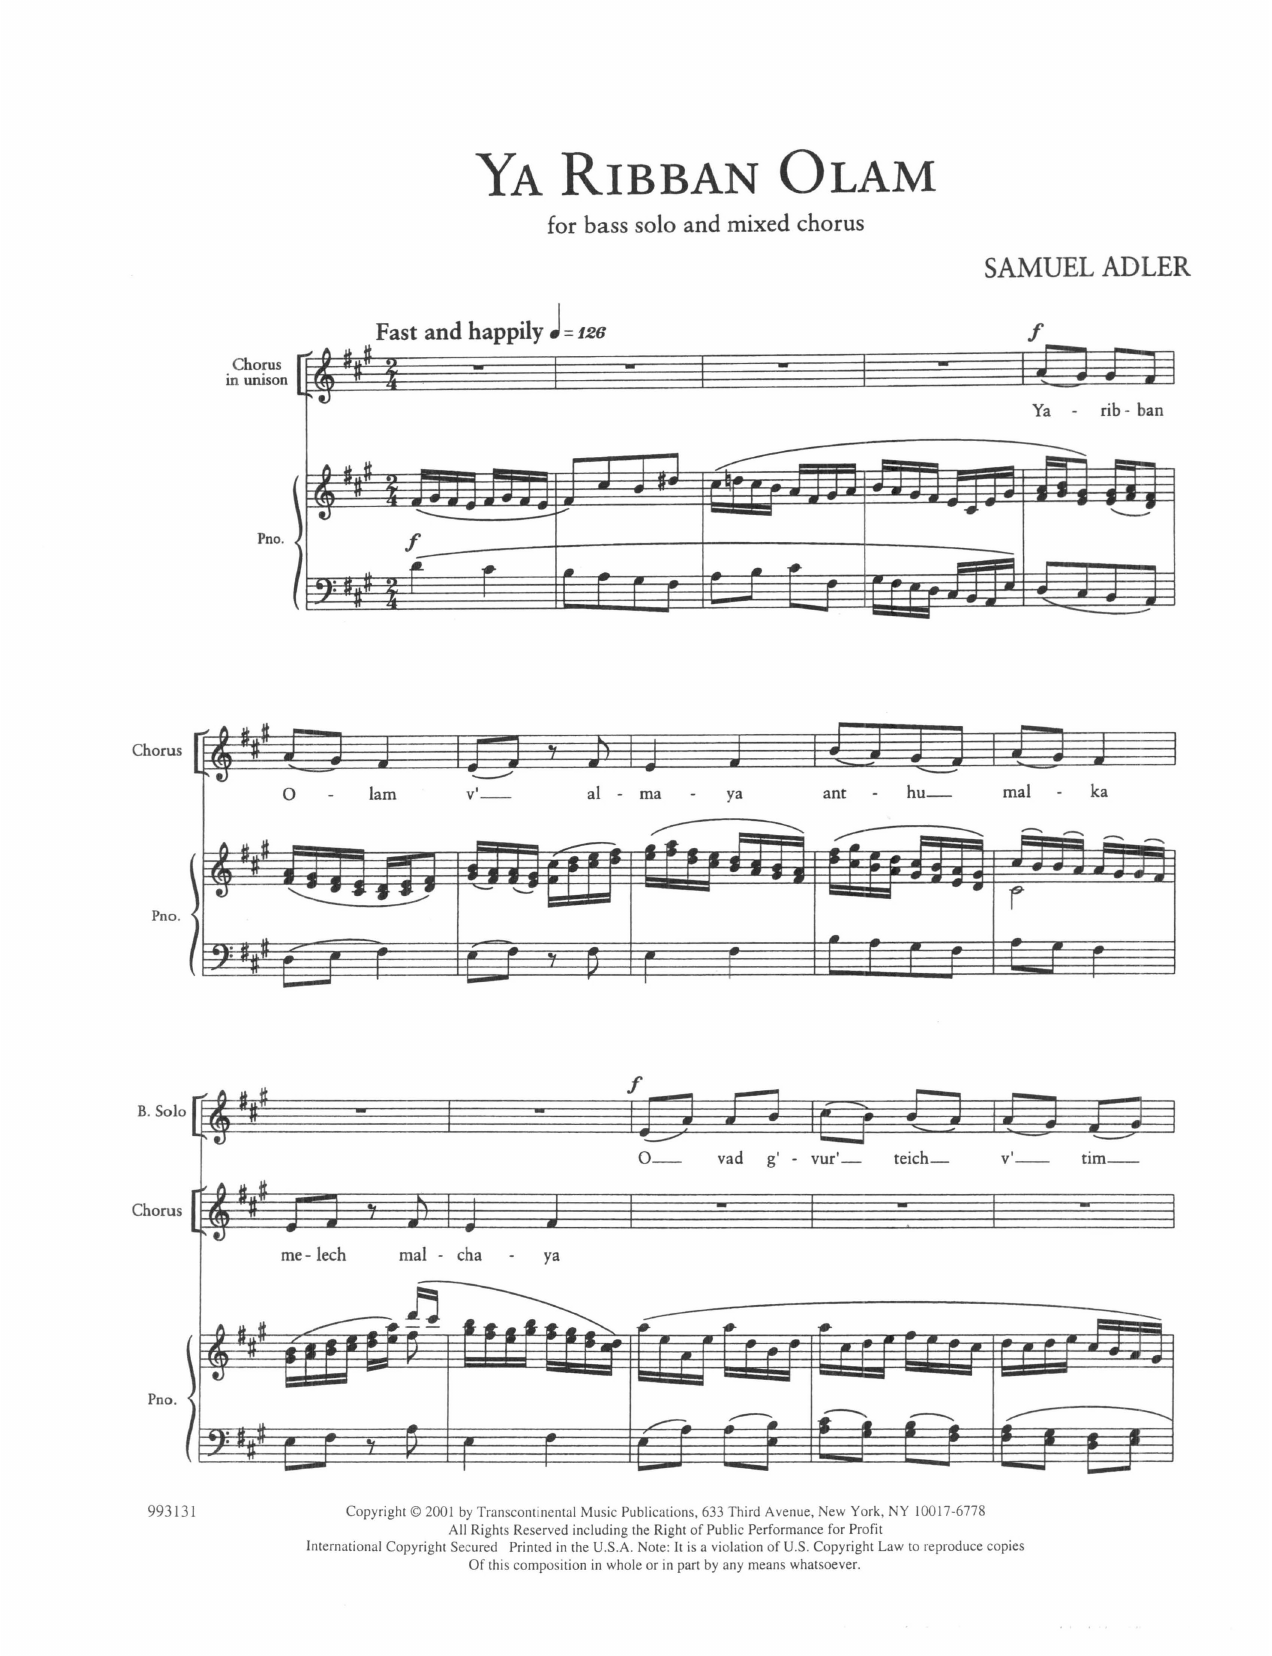 Samuel Adler Five Sephardic Choruses: Ya Ribban Olam sheet music notes and chords arranged for SATB Choir